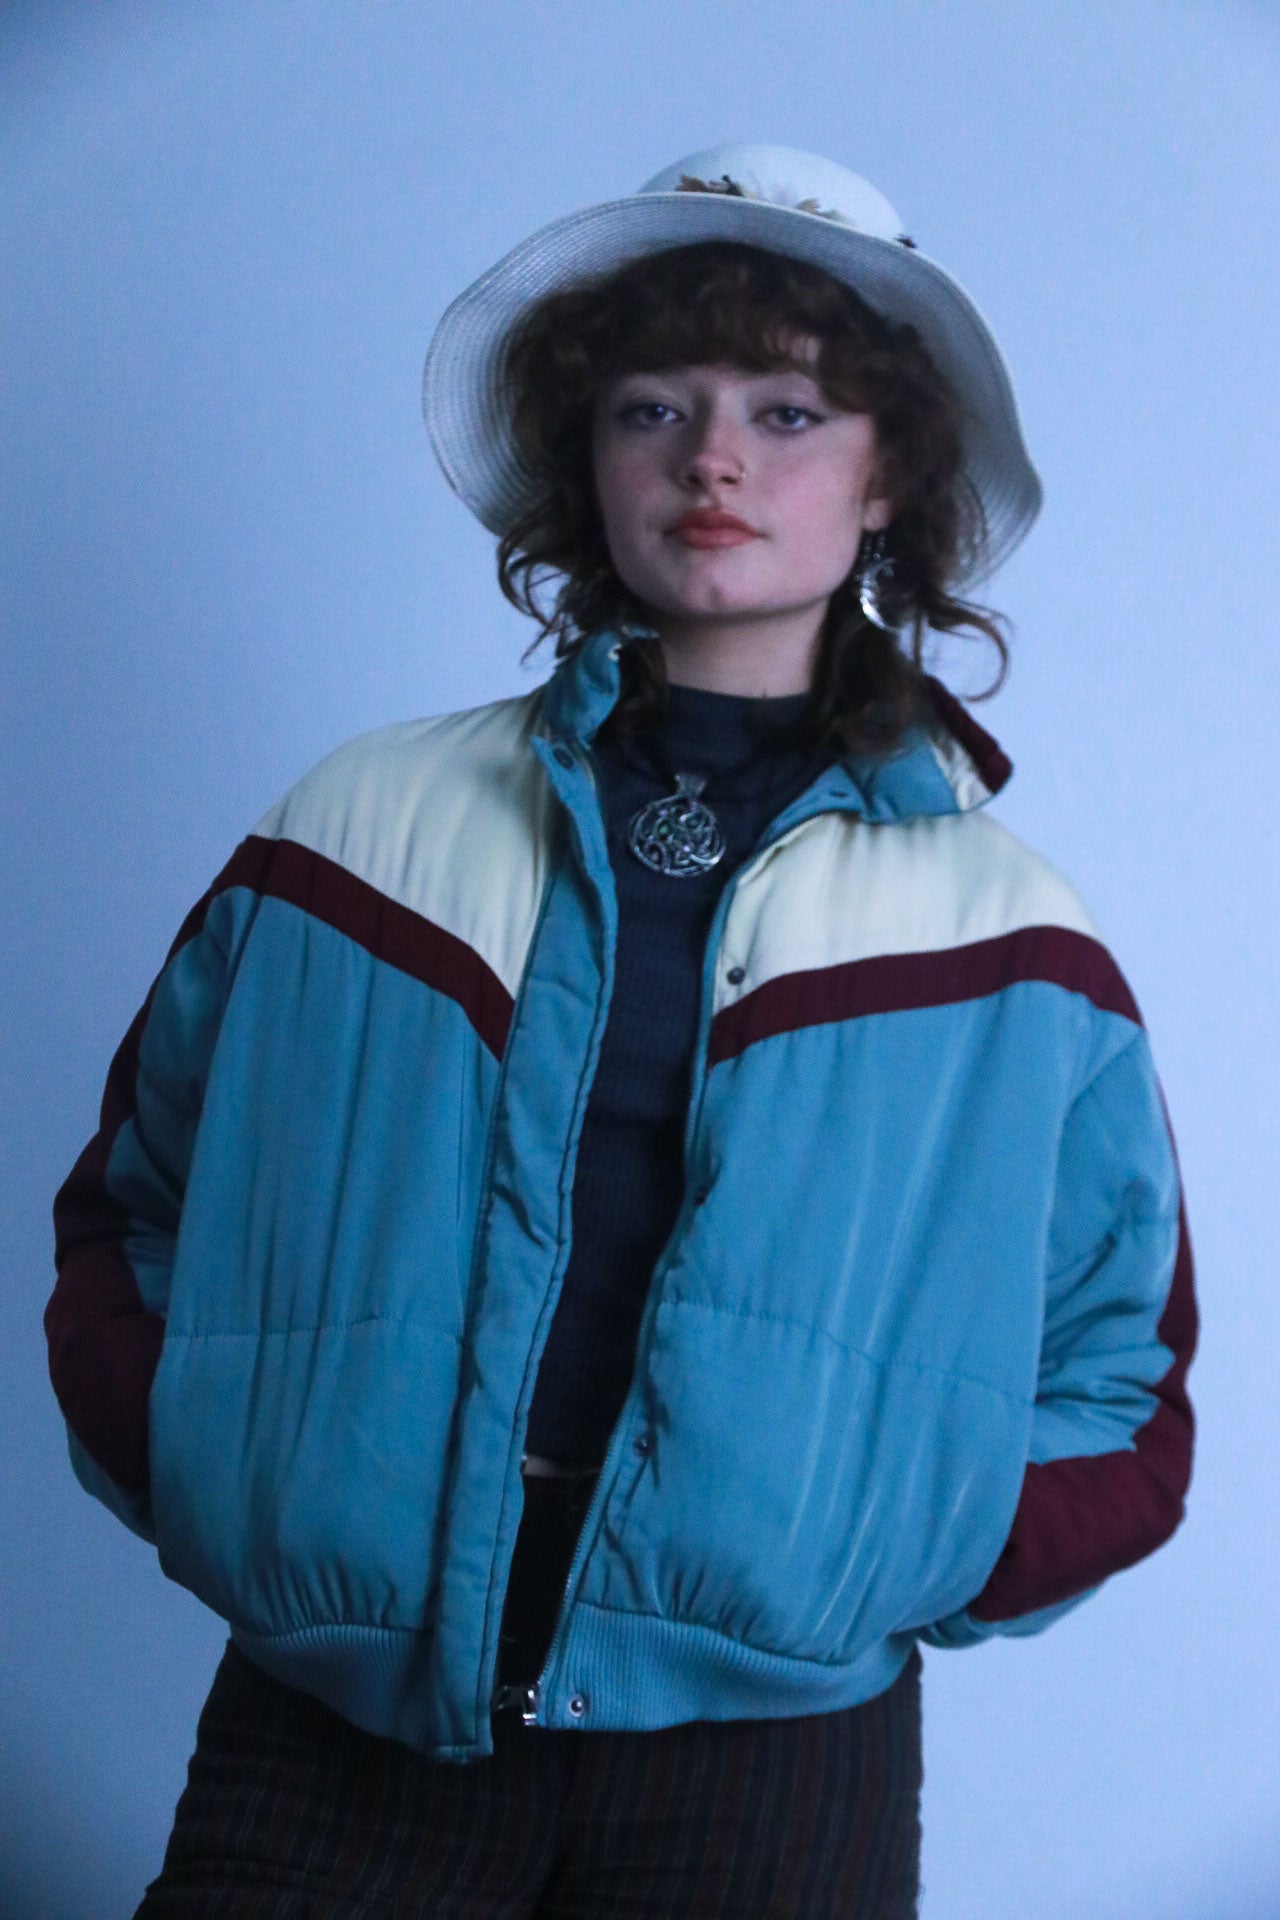 Rubynee Vintage puffed multi color jacket